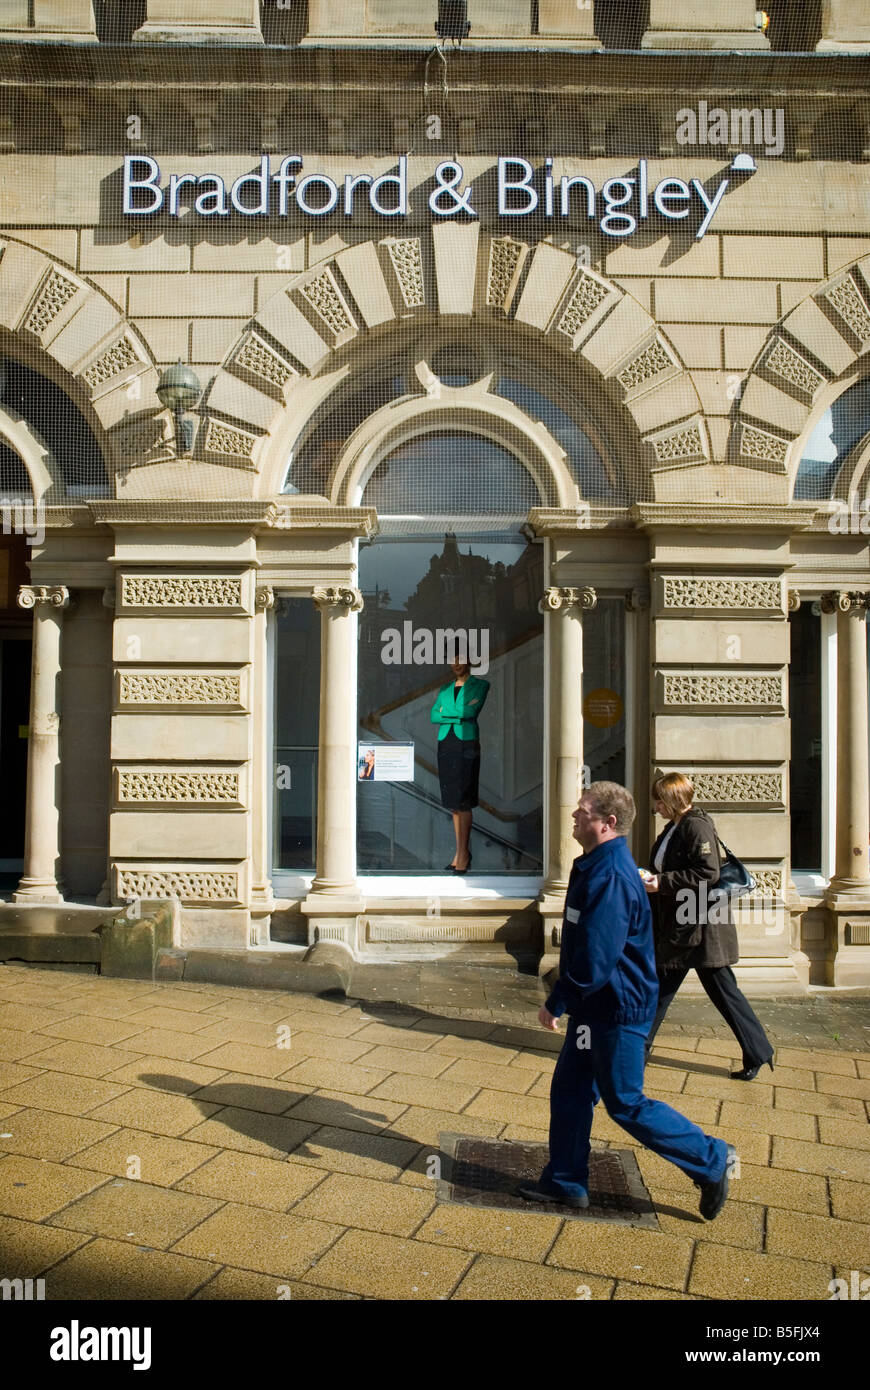 Ein Zweig der Bradford and Bingley Gebäude Socoiety kurz nach der Verstaatlichung, Oktober 2008 Stockfoto